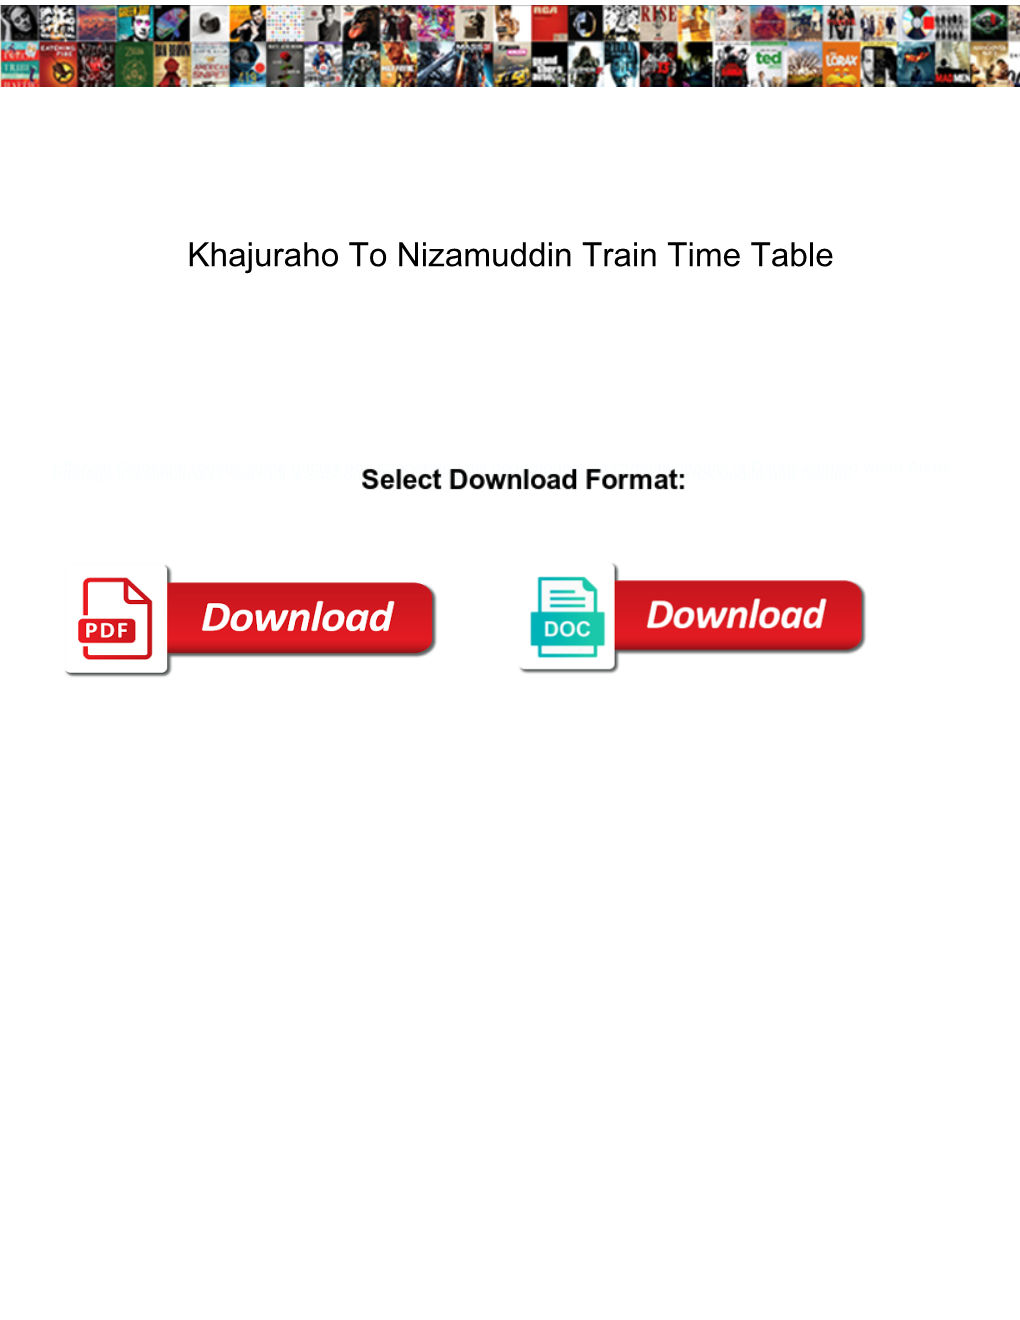 Khajuraho to Nizamuddin Train Time Table